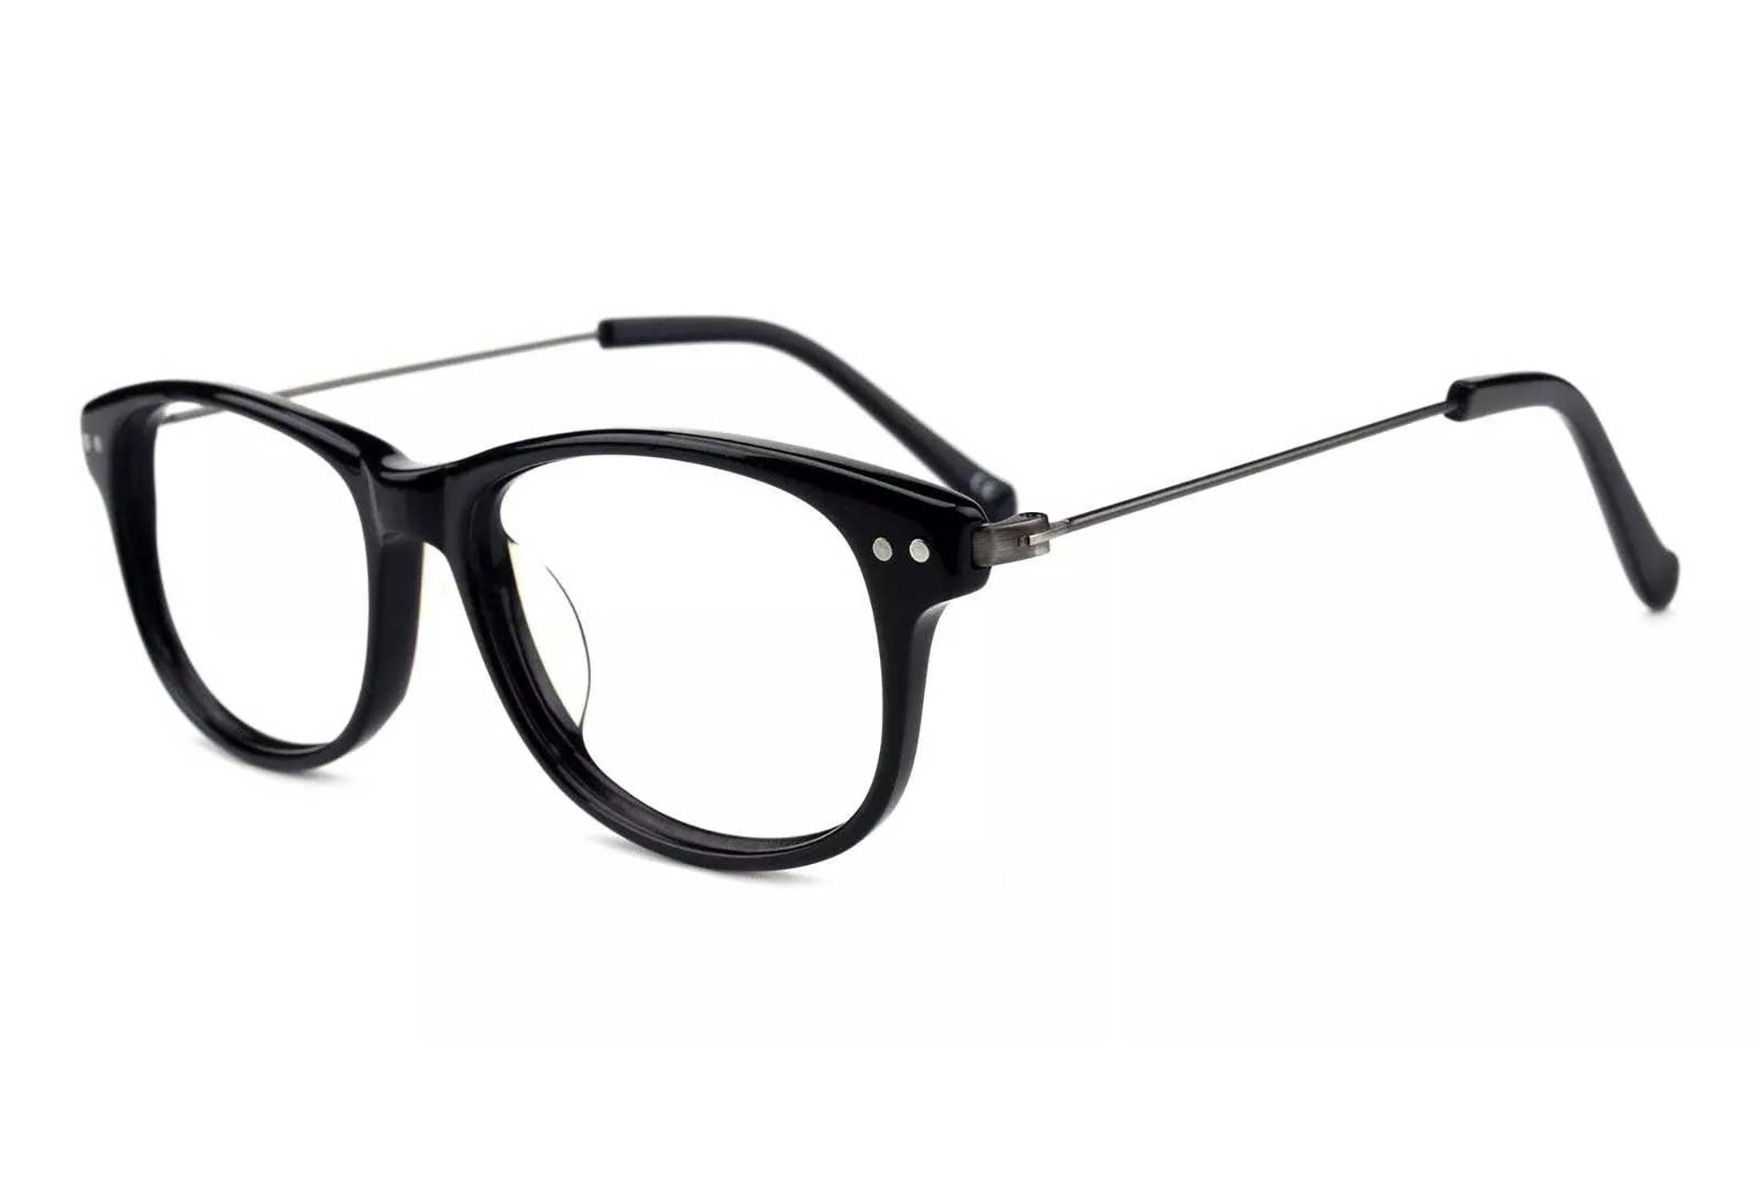 Billige briller fra eo Selection - Colesole - Svart